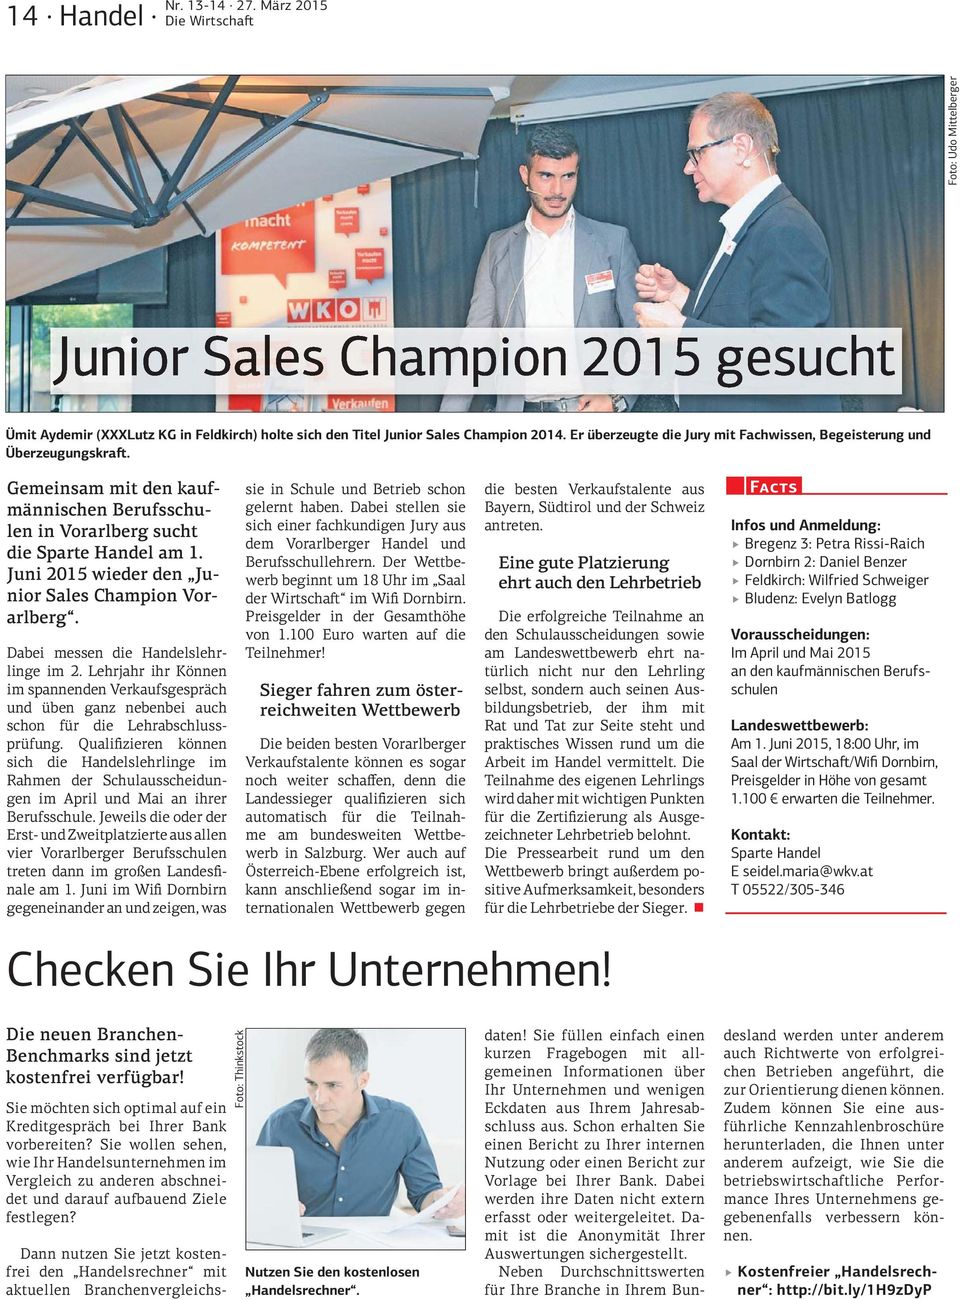 Juni 2015 wieder den Junior Sales Champion Vorarlberg. Dabei messen die Handelslehrlinge im 2.